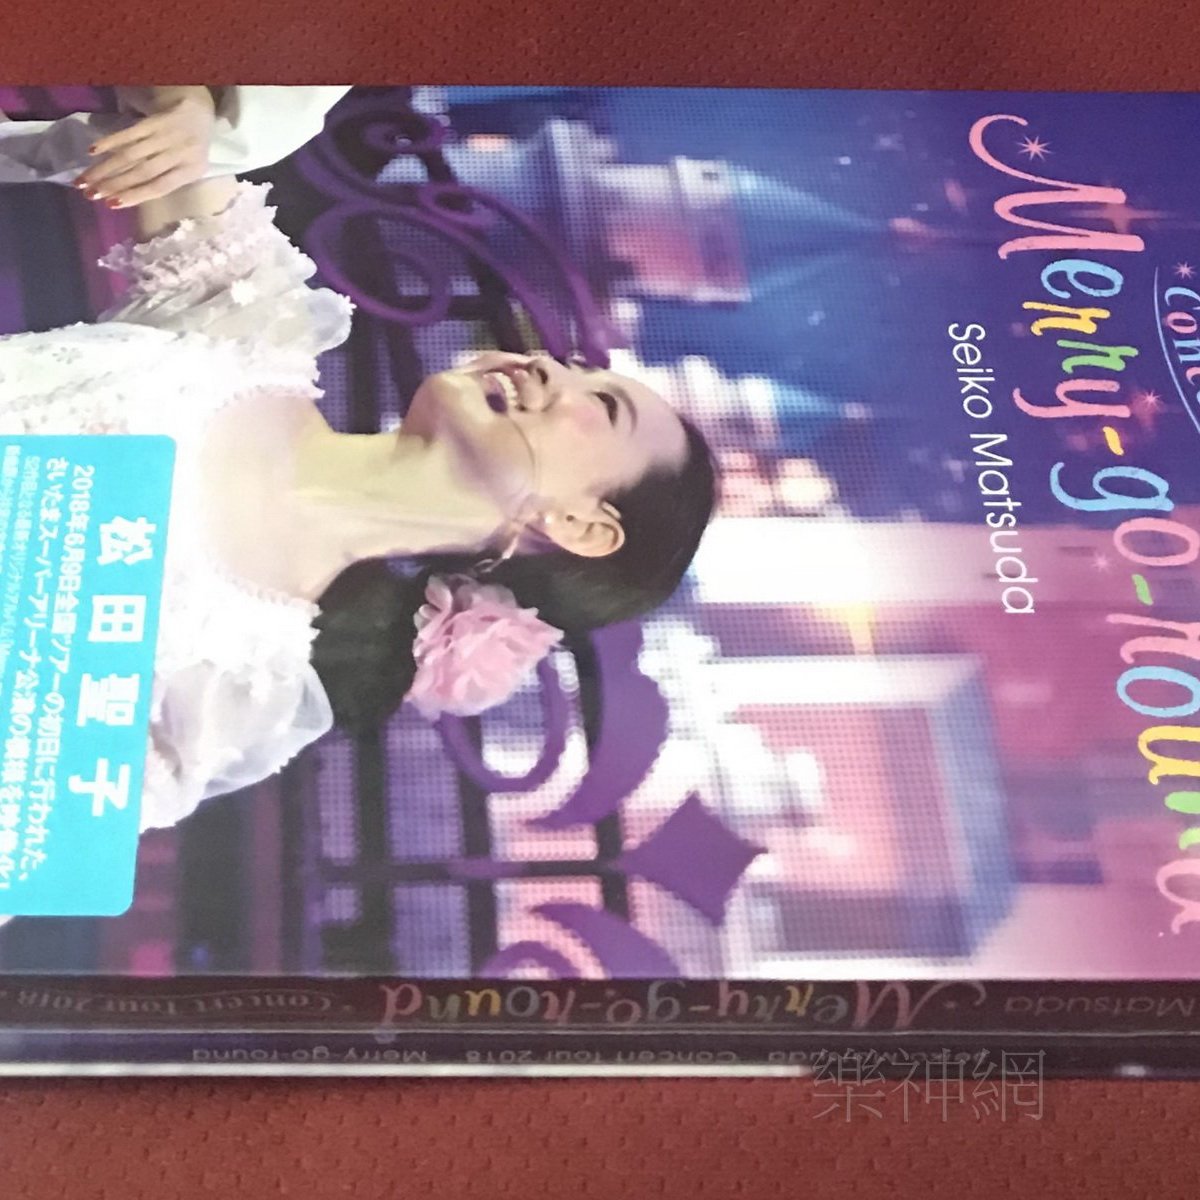 CELEBRATION TOUR 2018(完全生産限定盤)(特典なし) [DVD] mxn26g8 ...